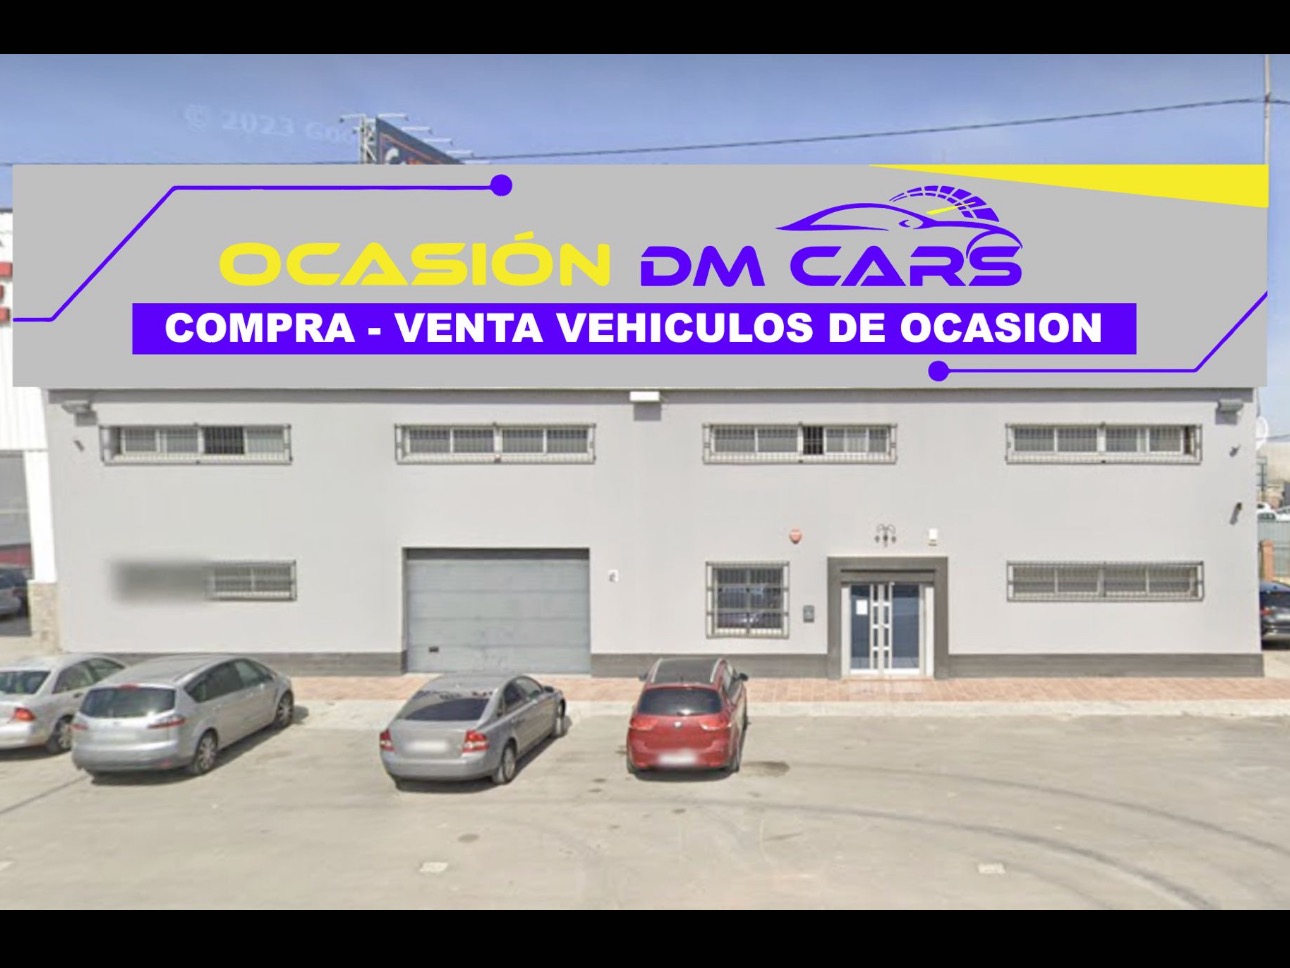 logo de Ocasion DMCars 